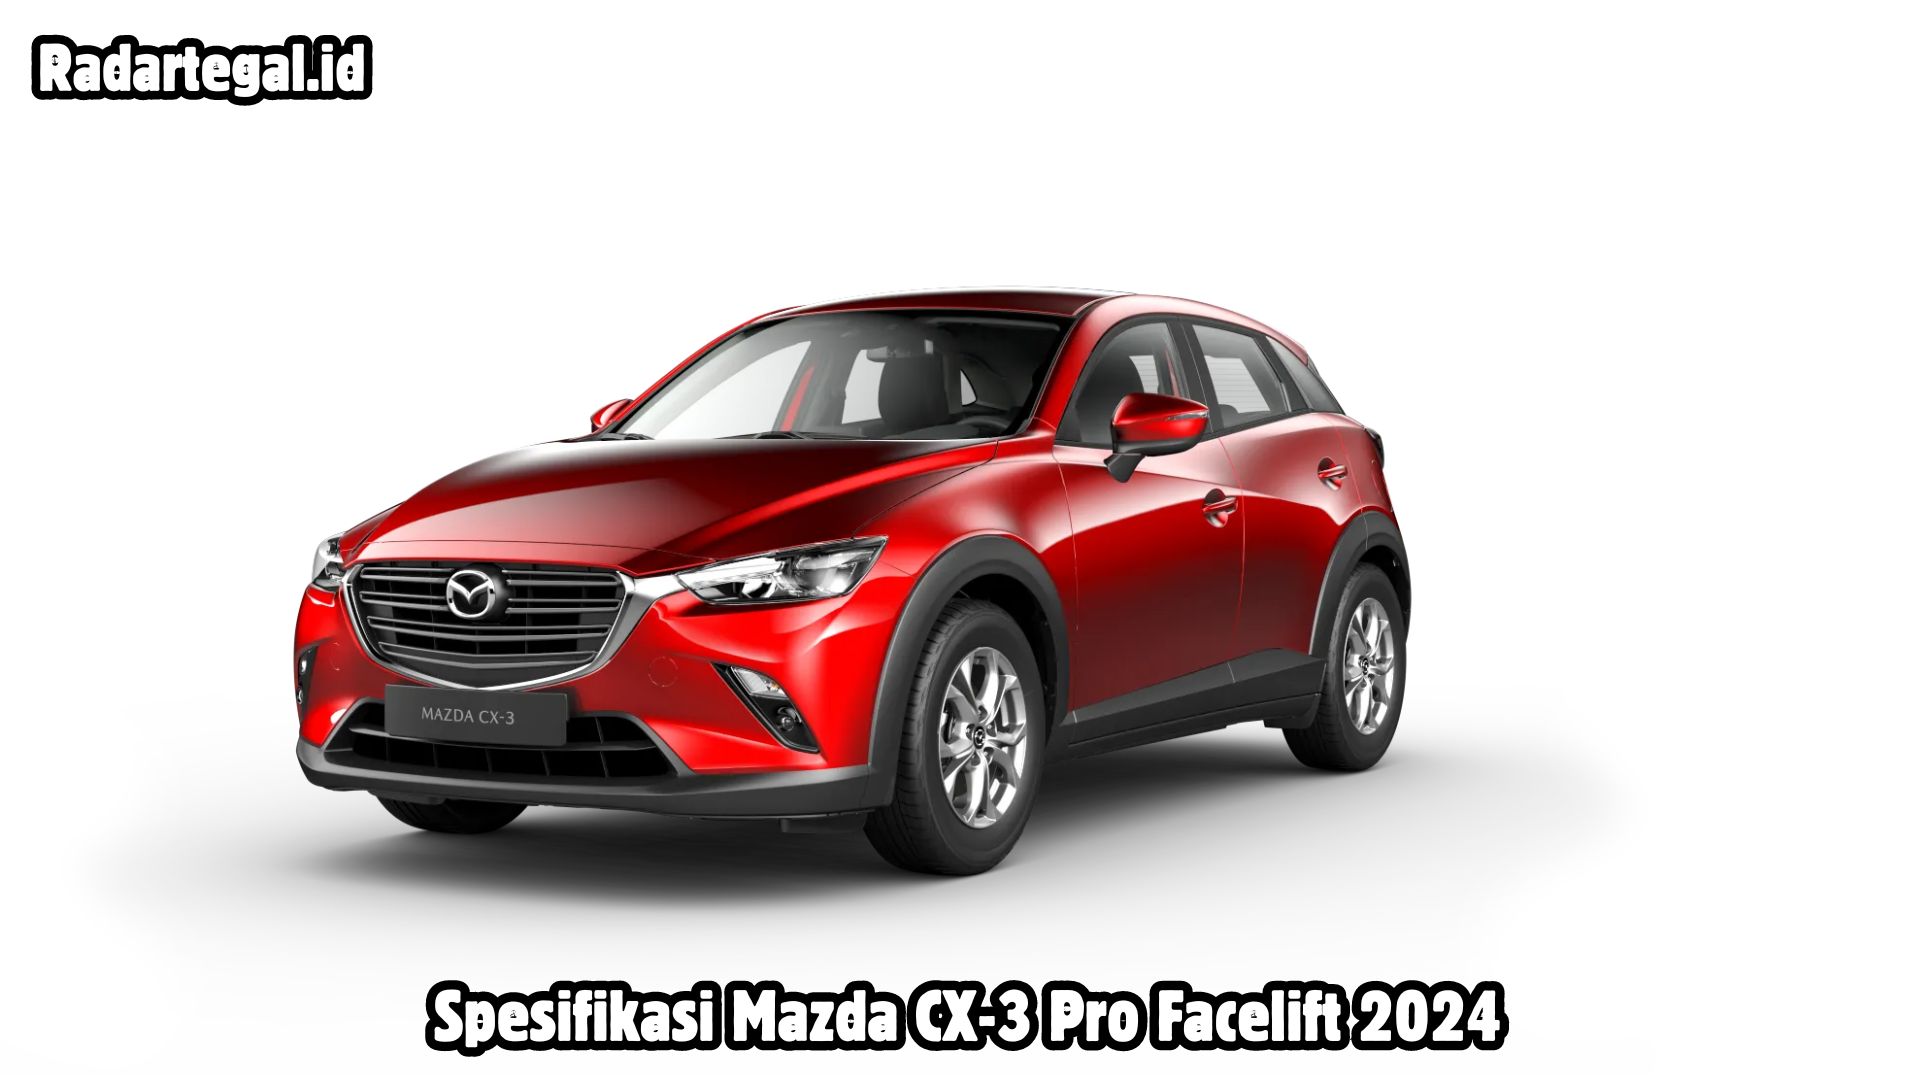 Spesifikasi Mazda CX-3 Pro Facelift 2024, Tampilan Terbaru yang Lebih Modern dan Canggih 